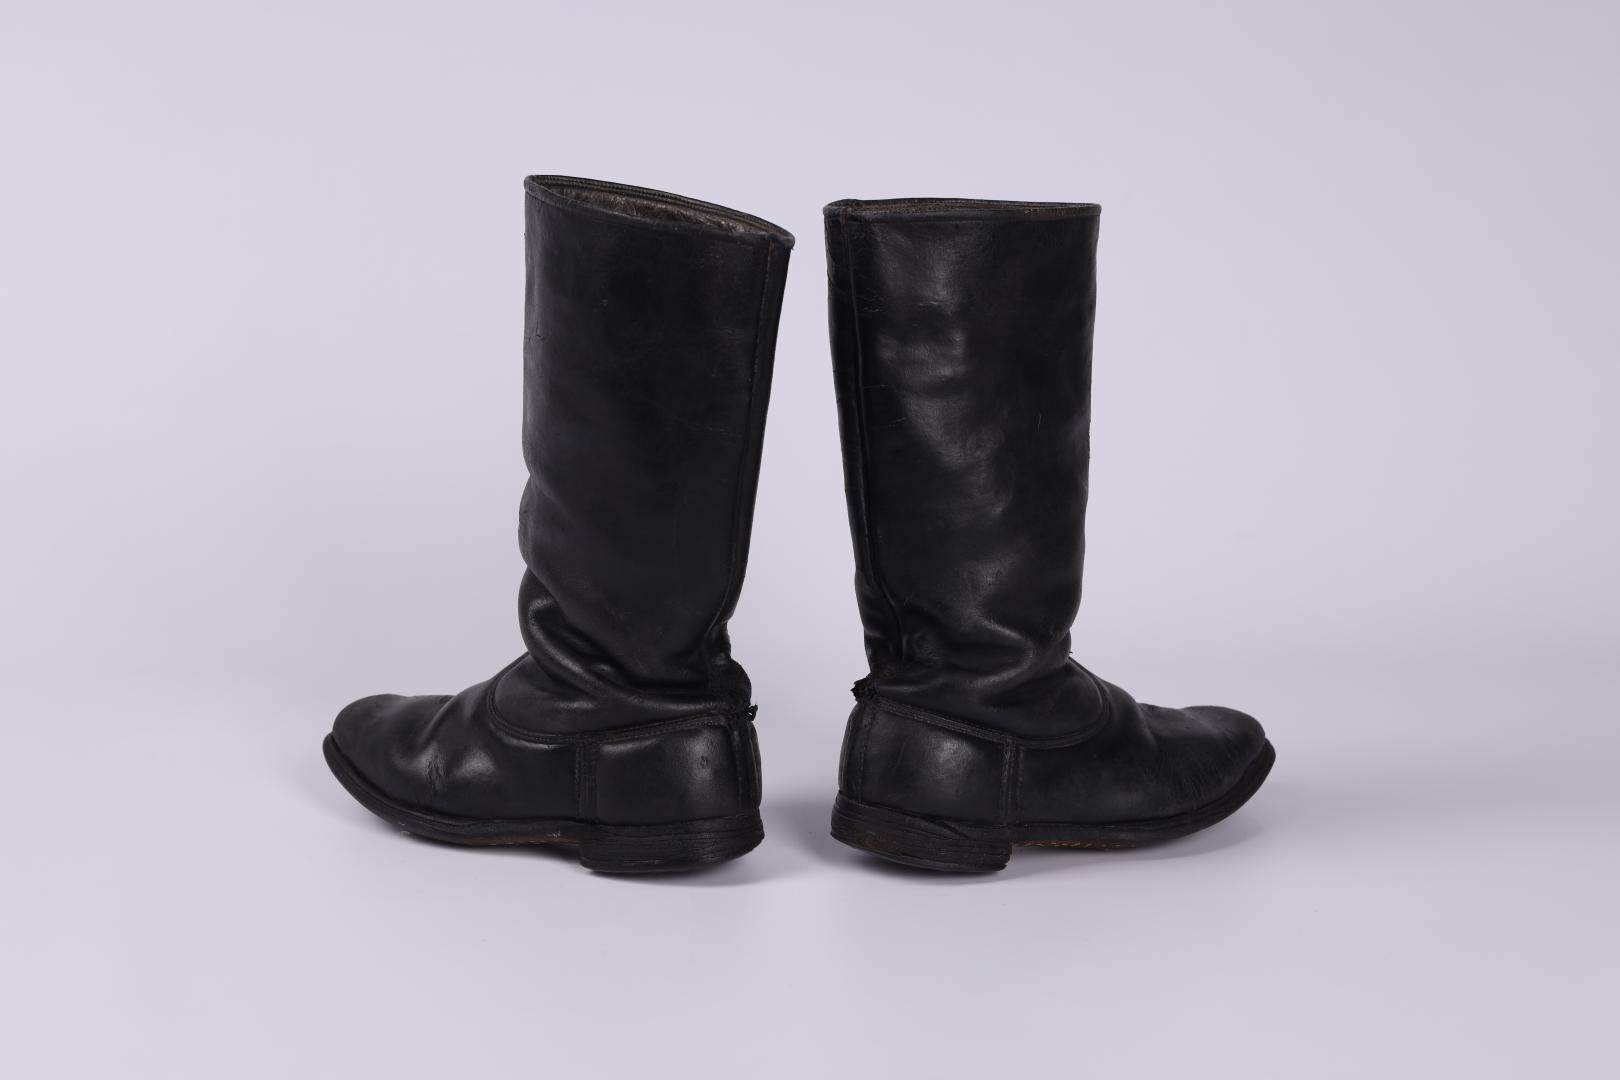 Children's boots